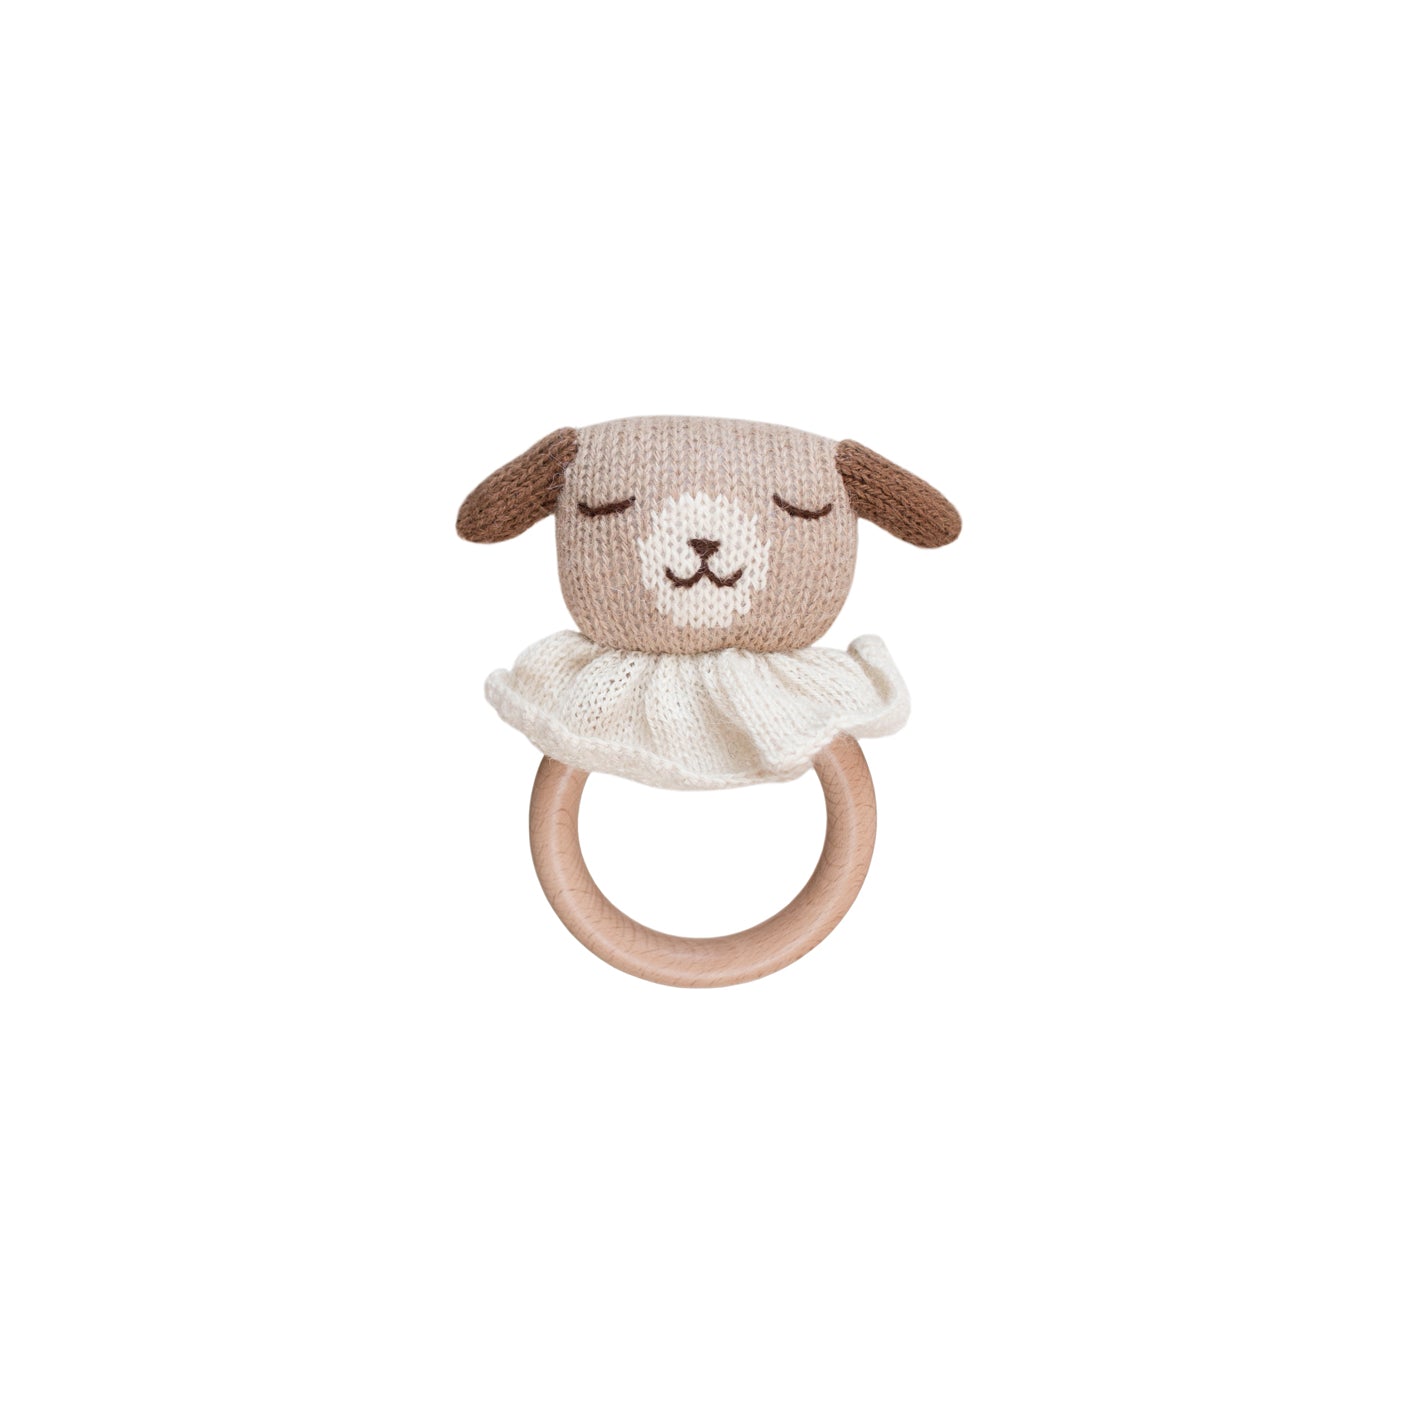 Alpaca wool Puppy baby teething wooden ring